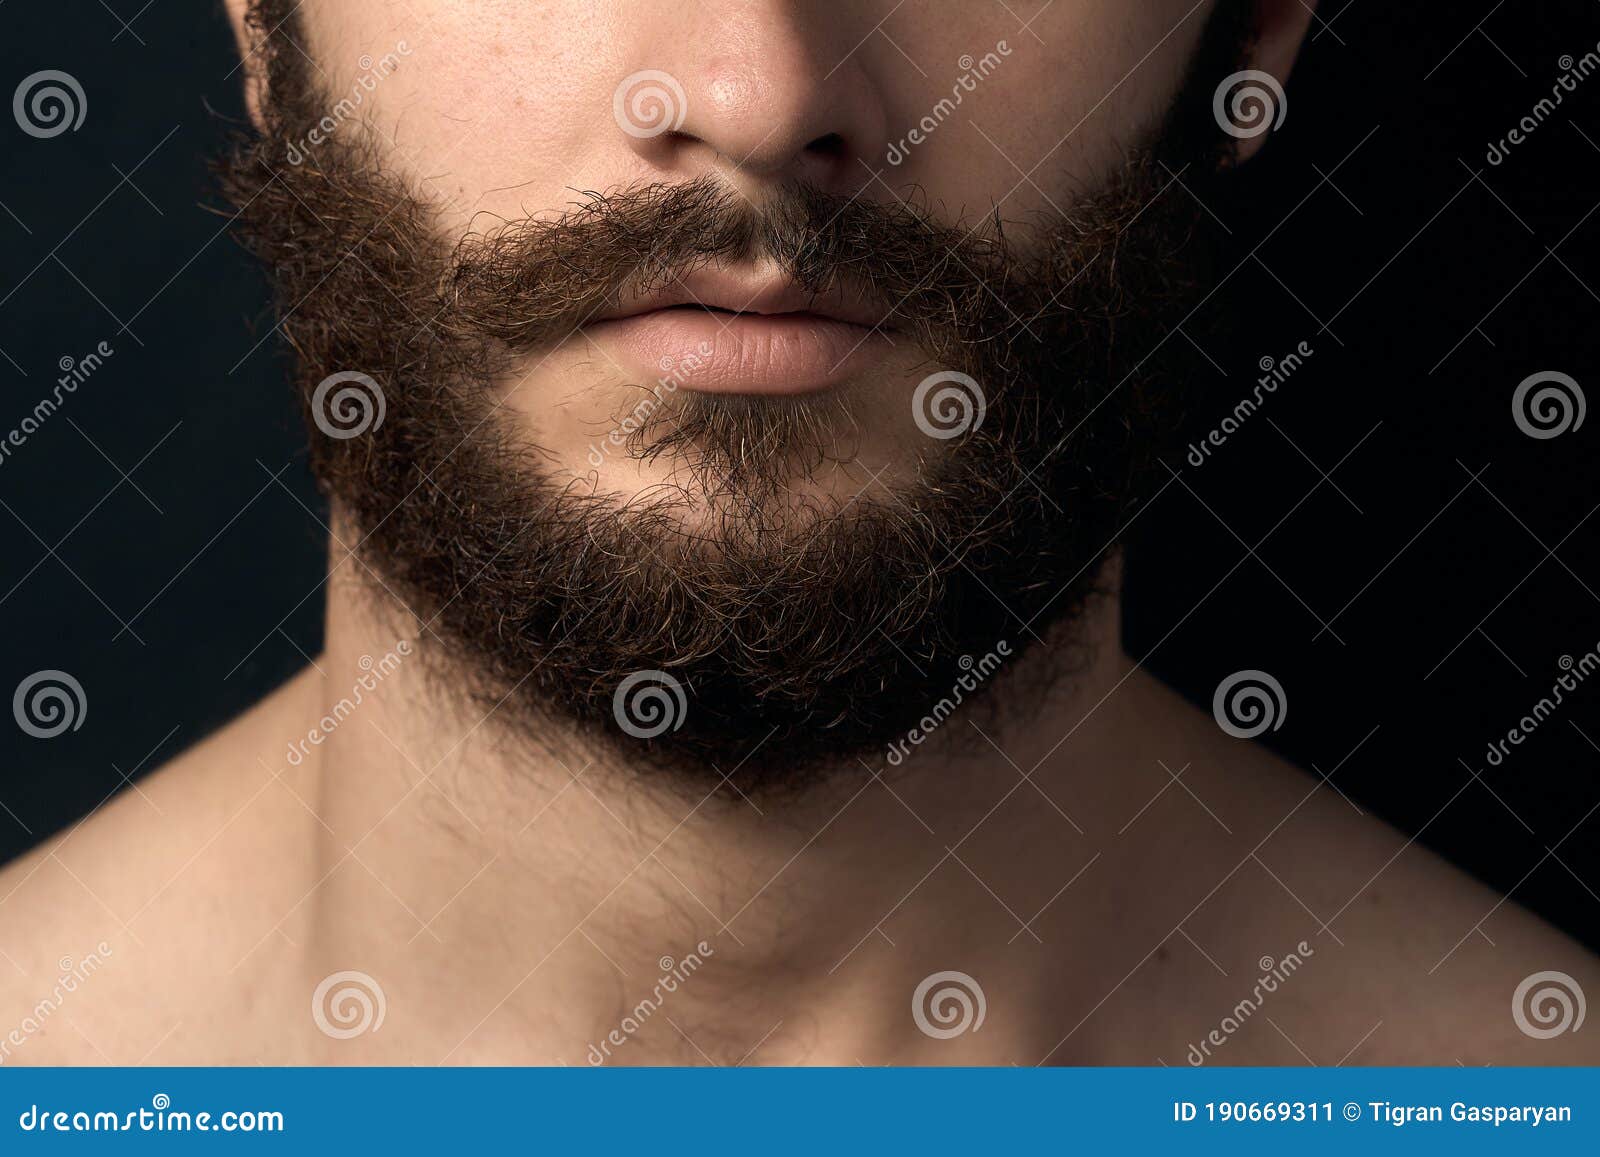 男生在青春期可以刮胡子吗？ - 知乎